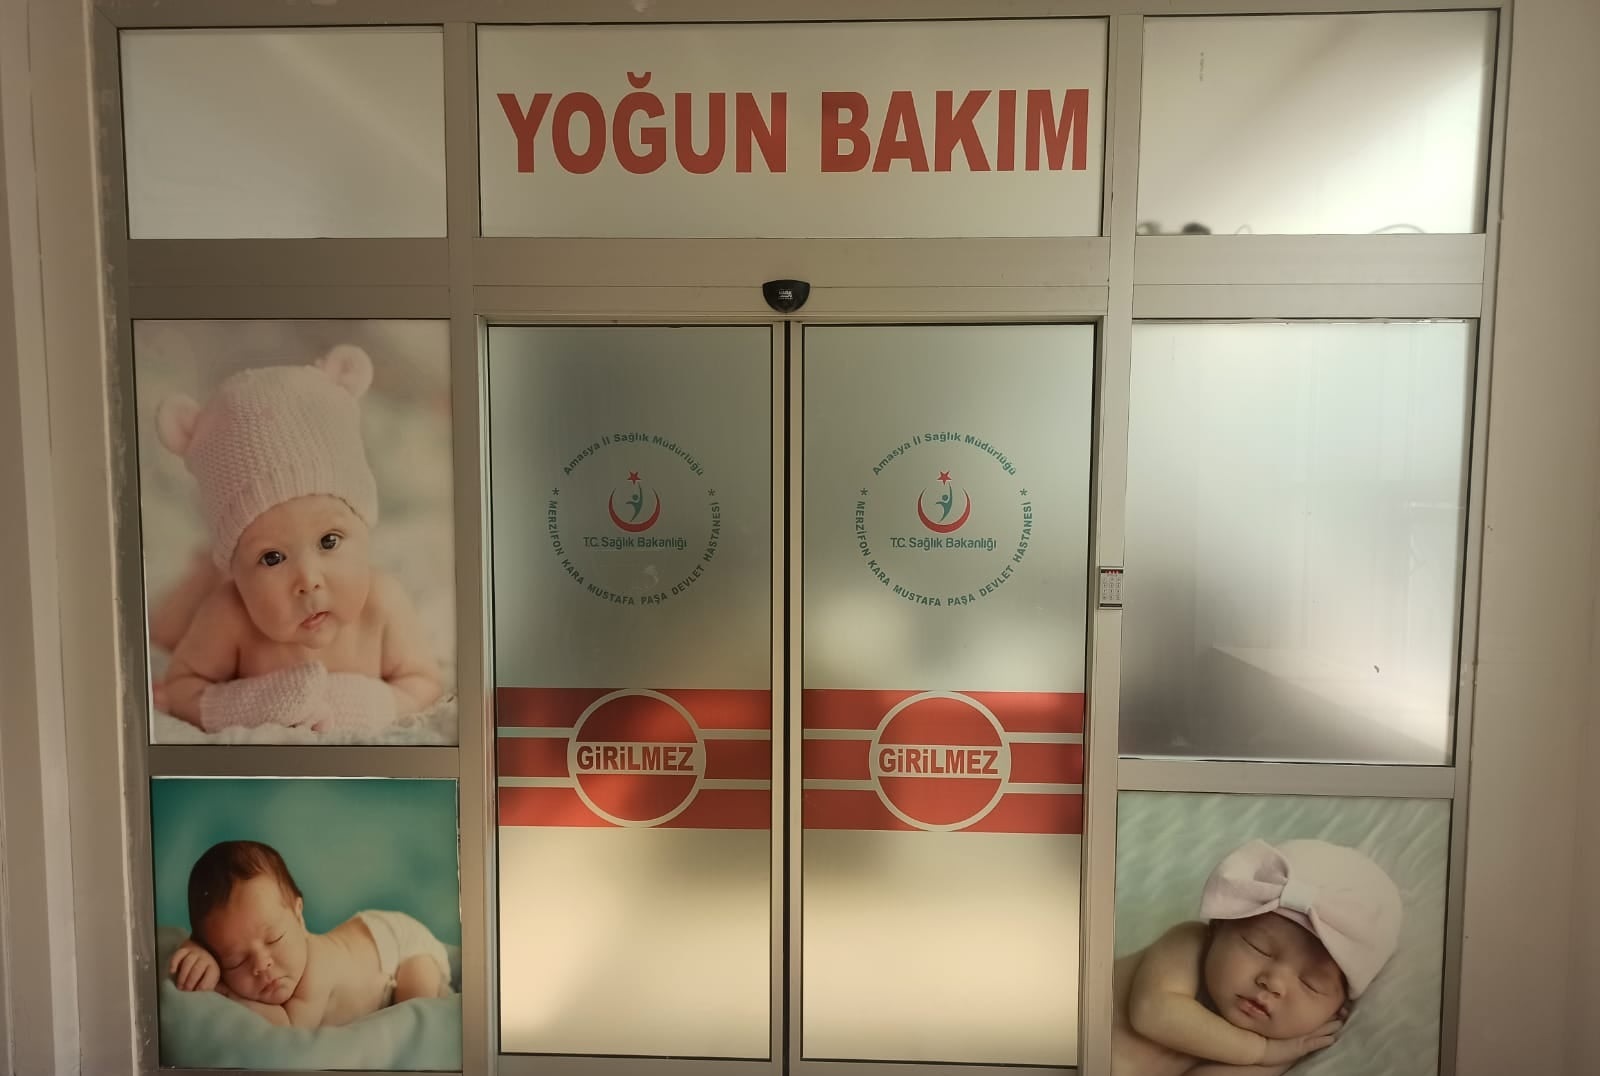 Merzifon Kara Mustafa Paşa Devlet Hastanesi yoğun bakım servisi açıldı